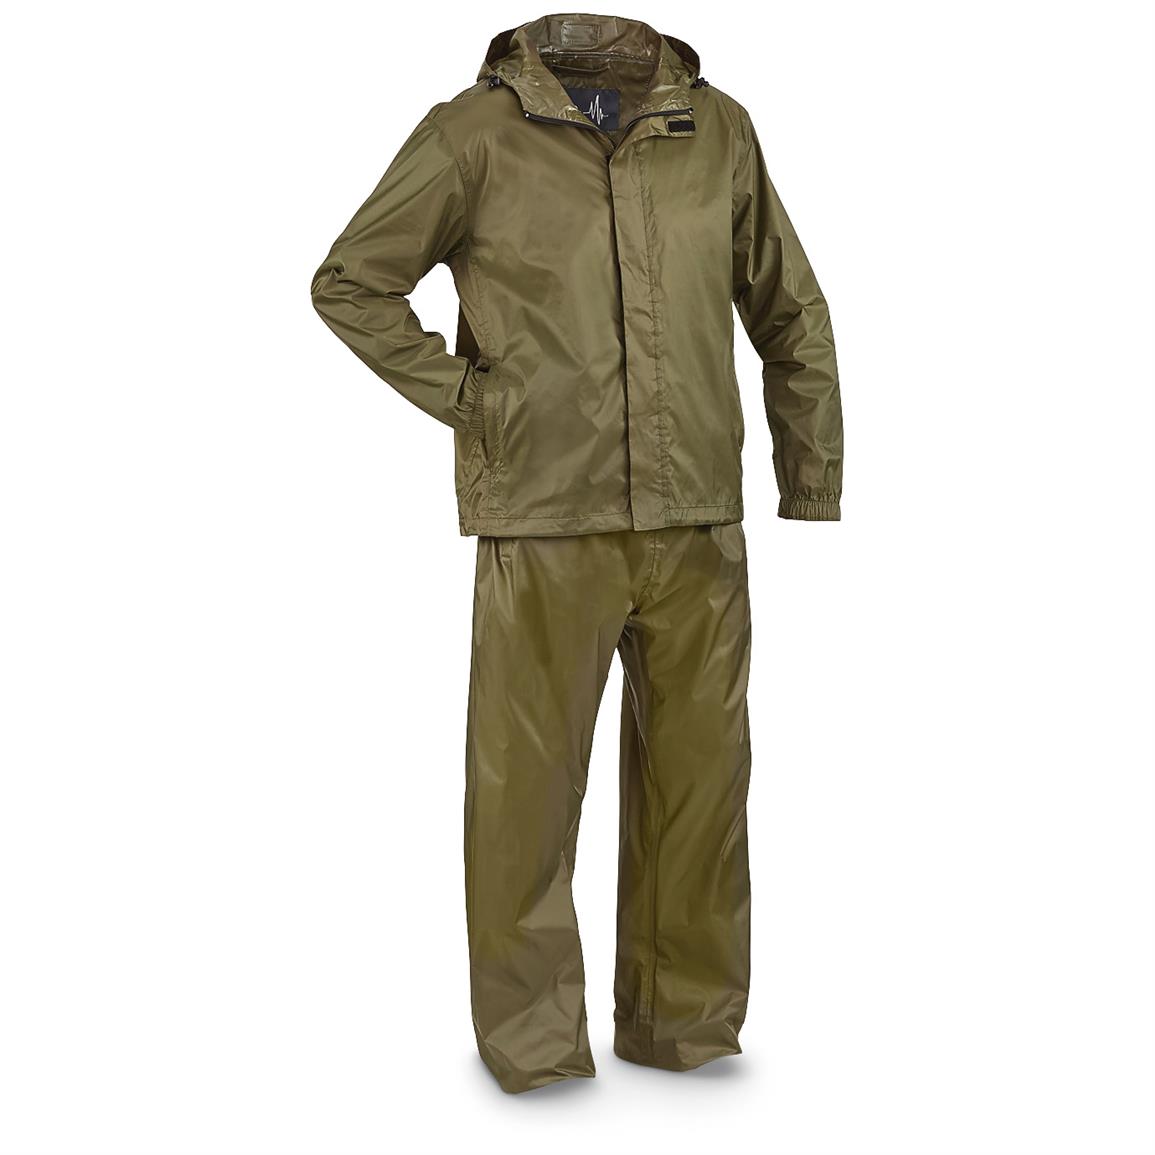 Guide Gear Men's Packable Rain Suit - 658183, Rain Jackets & Rain ...